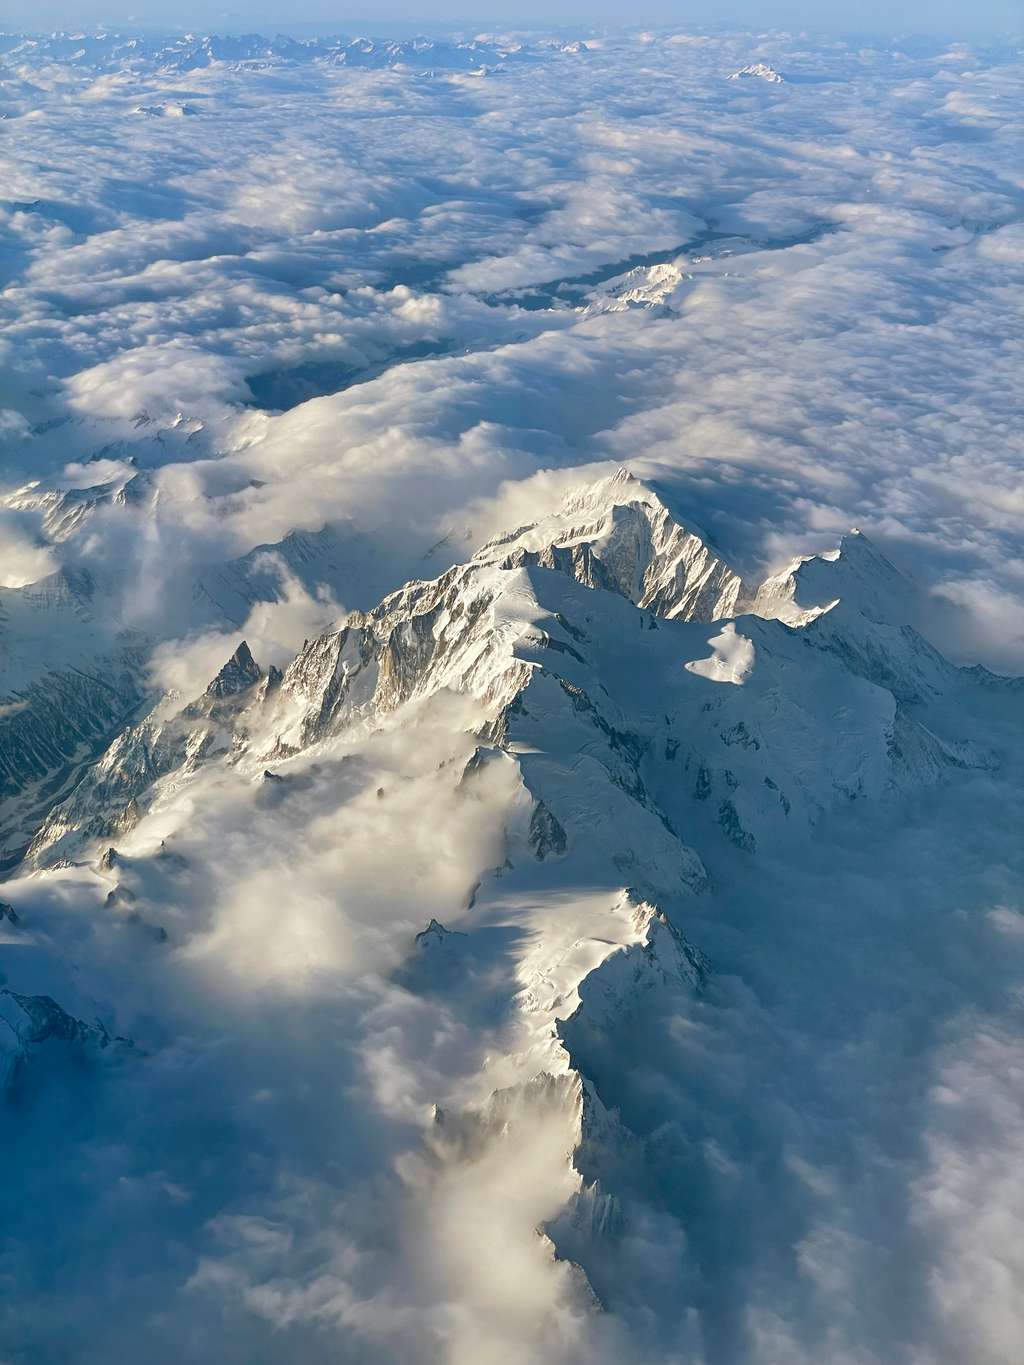 Vue aérienne du mont Blanc recouvert de ses neiges éternelles. © VautrinThomas, <em>Wikimedia Commons</em>, CC by-sa 4.0 